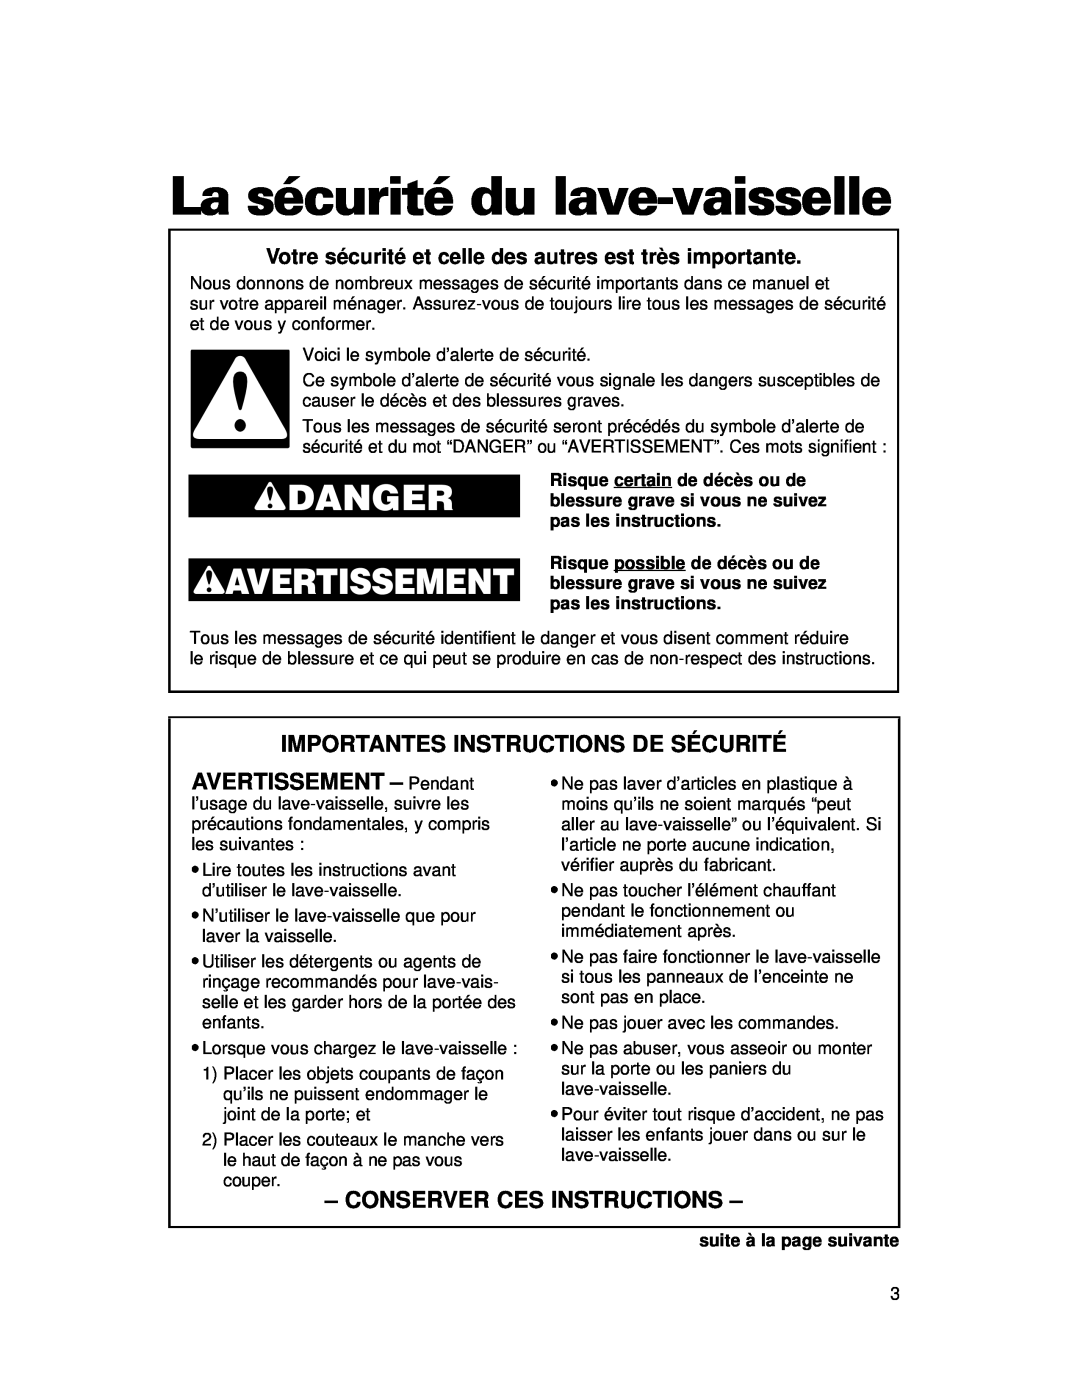 Whirlpool 910 Series warranty La sécurité du lave-vaisselle, Importantes Instructions De Sécurité, AVERTISSEMENT - Pendant 